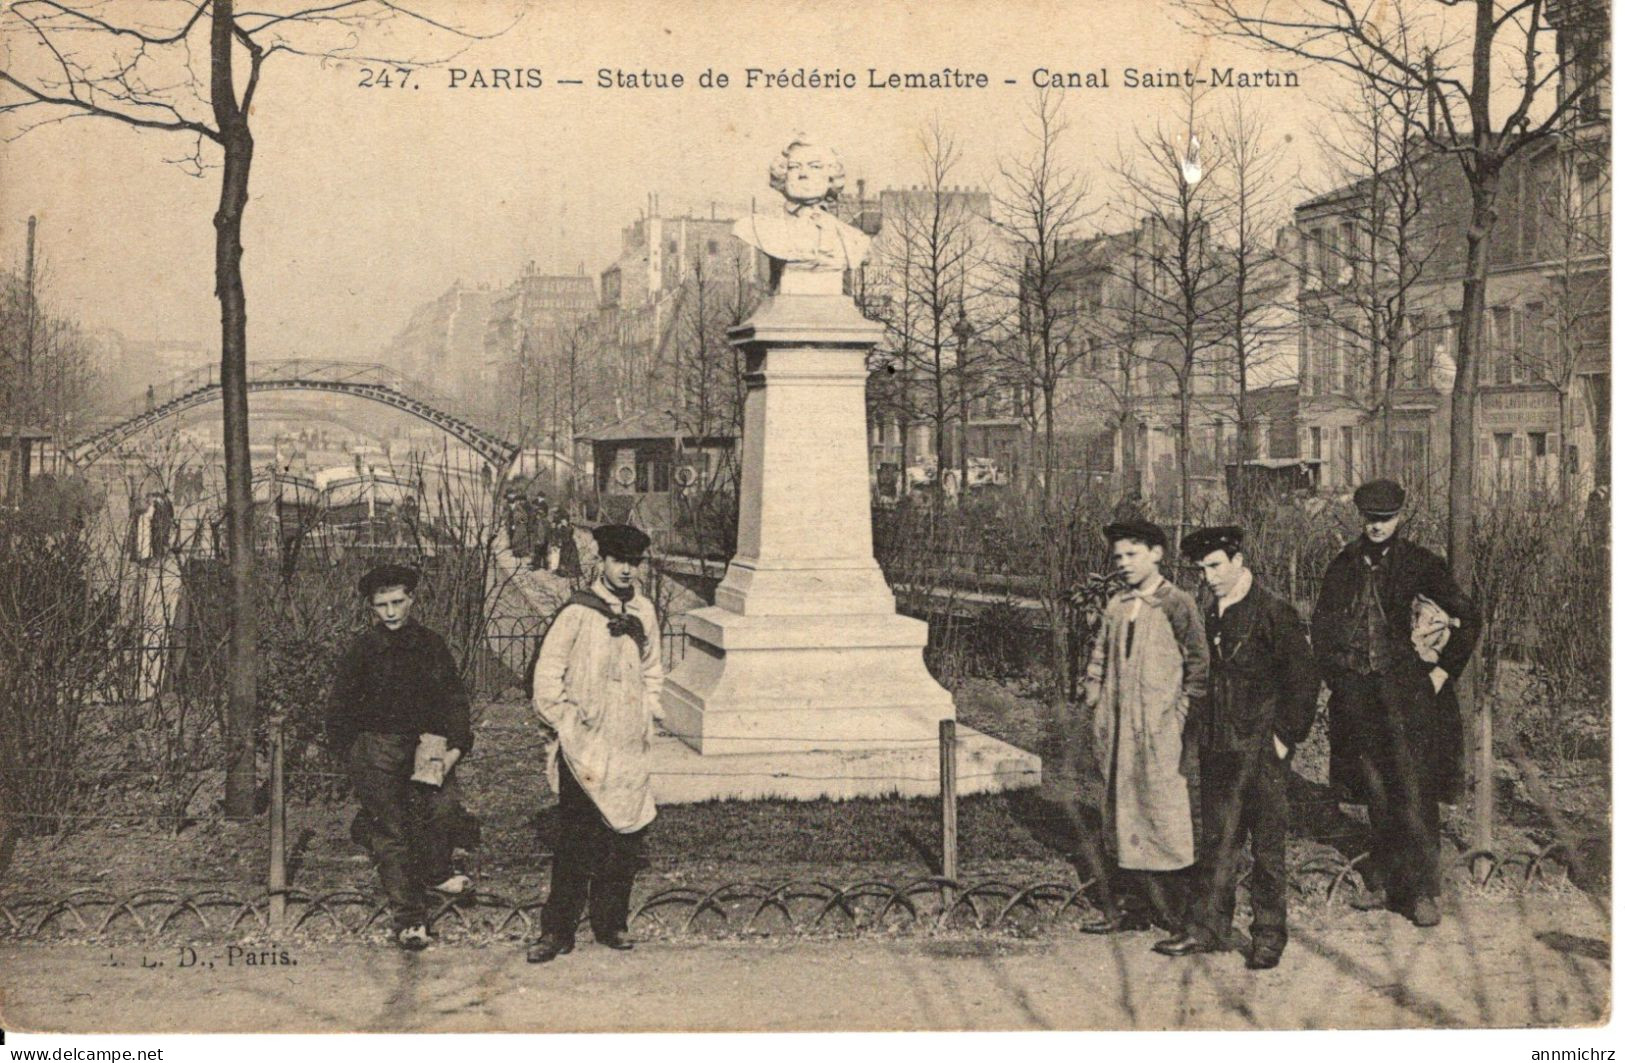 STATUE DE FREDERIC LEMAITRE - Statues